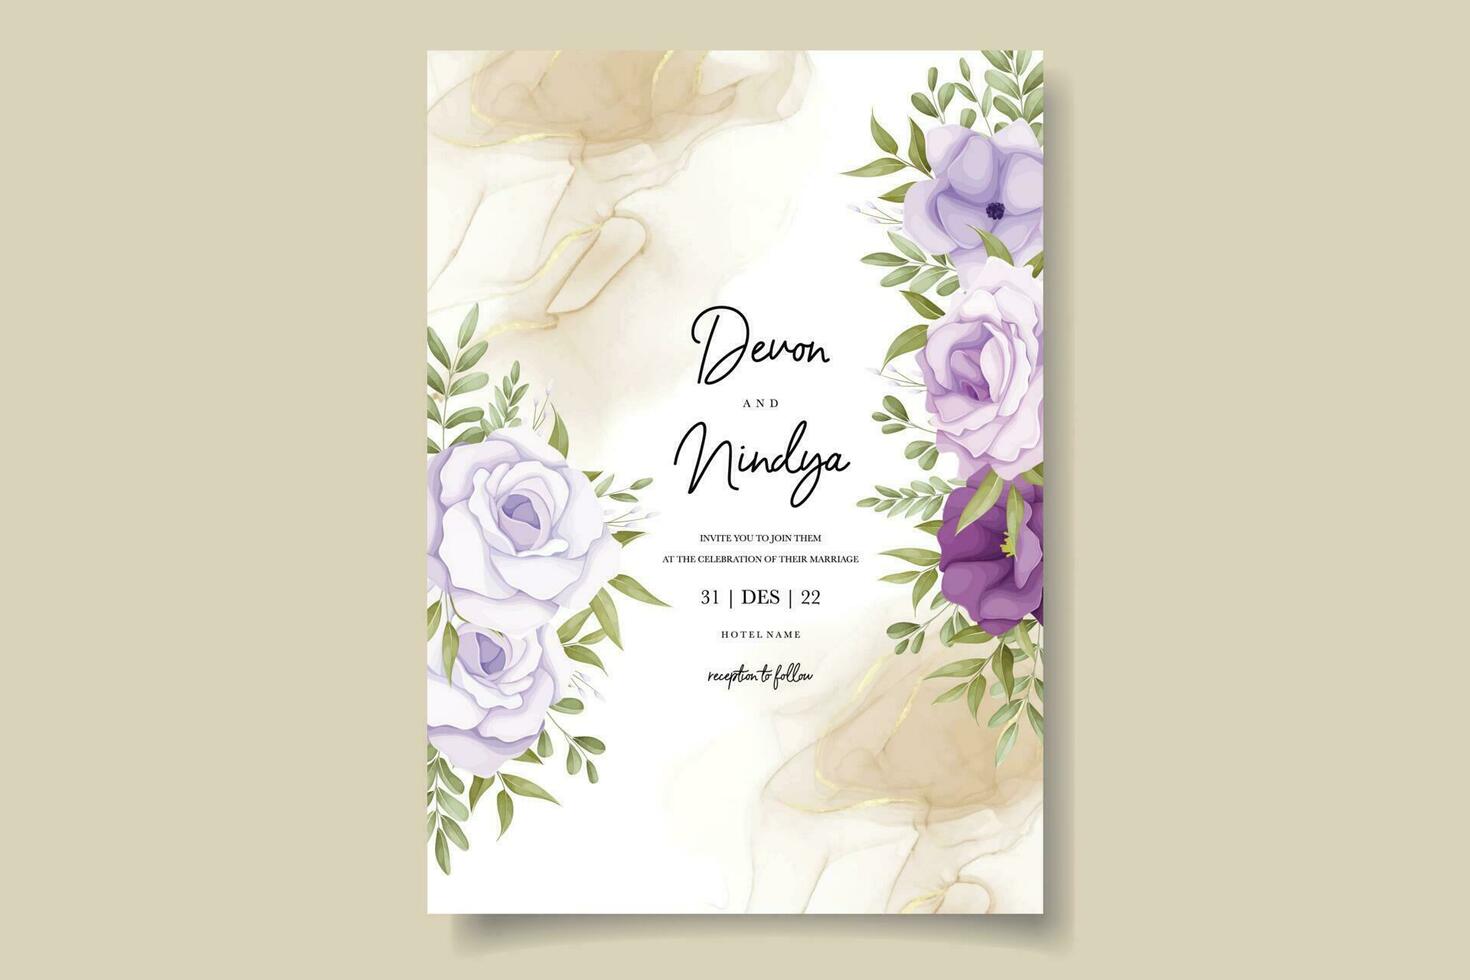 elegante Casamento convite cartão com roxa flores vetor